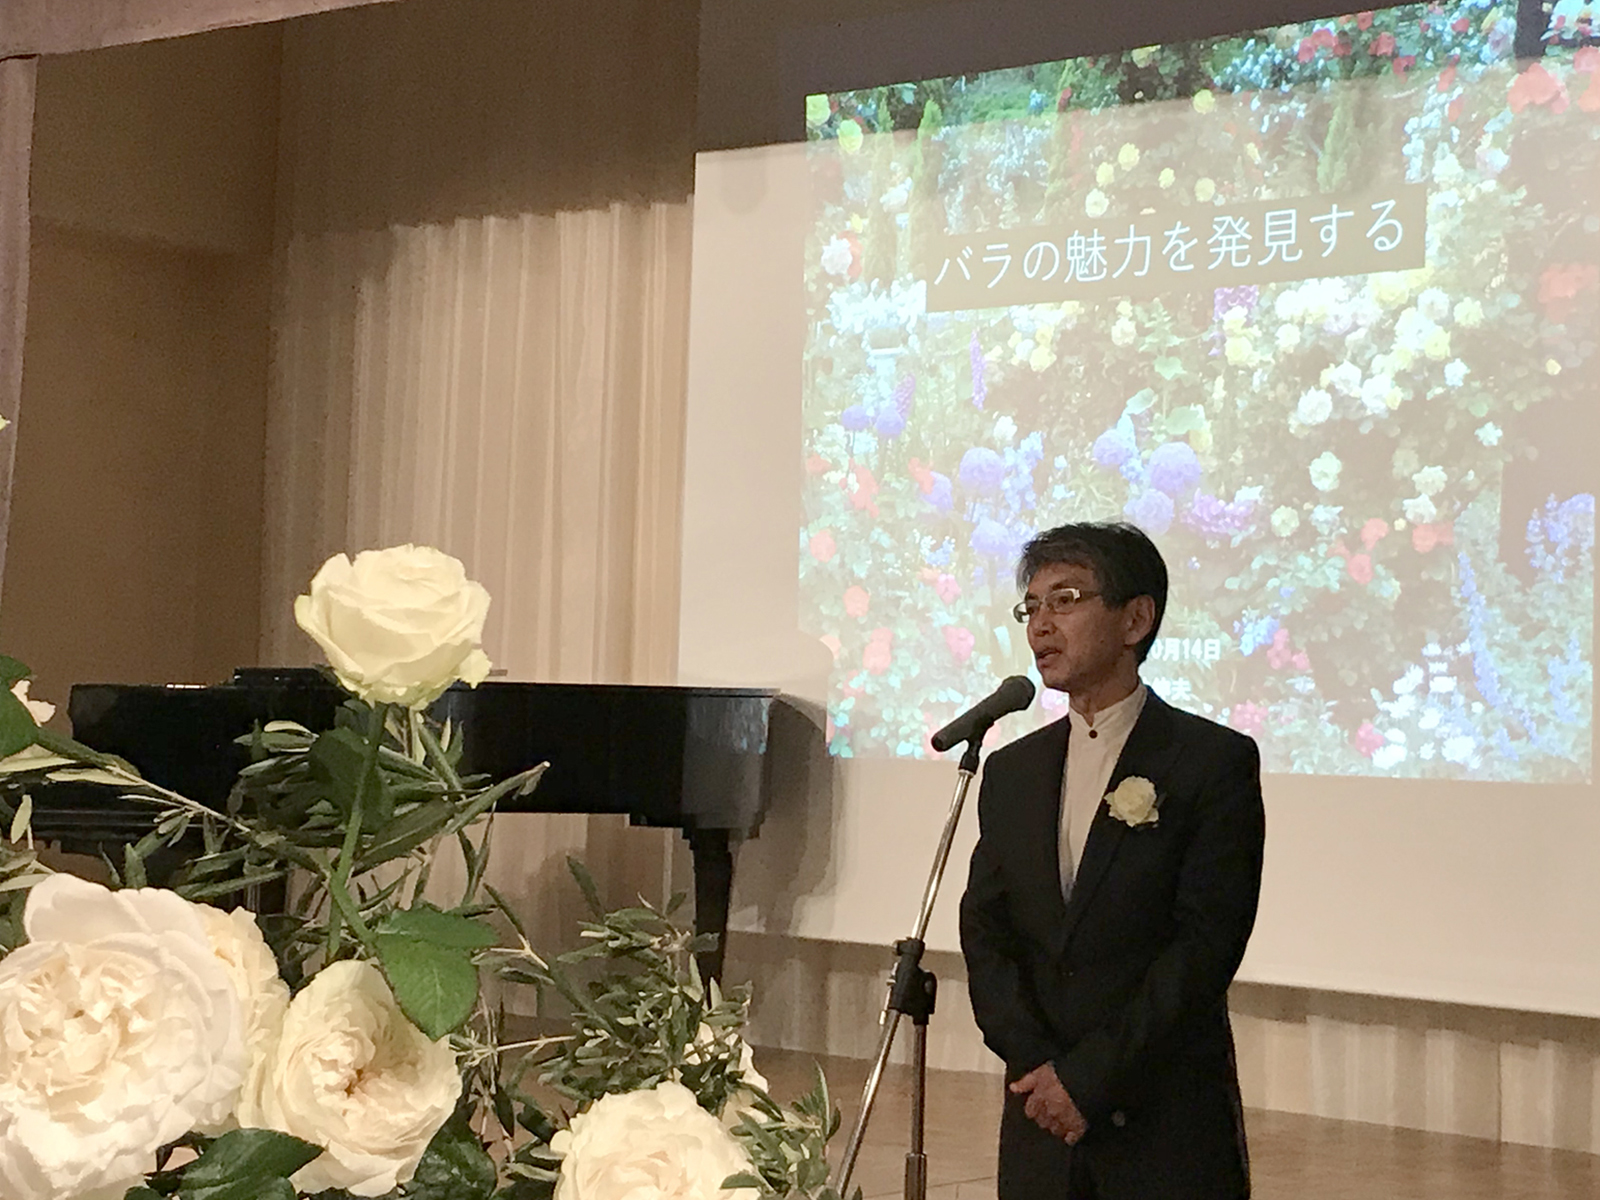 白砂伸夫先生の受賞記念祝賀会に出席しました。